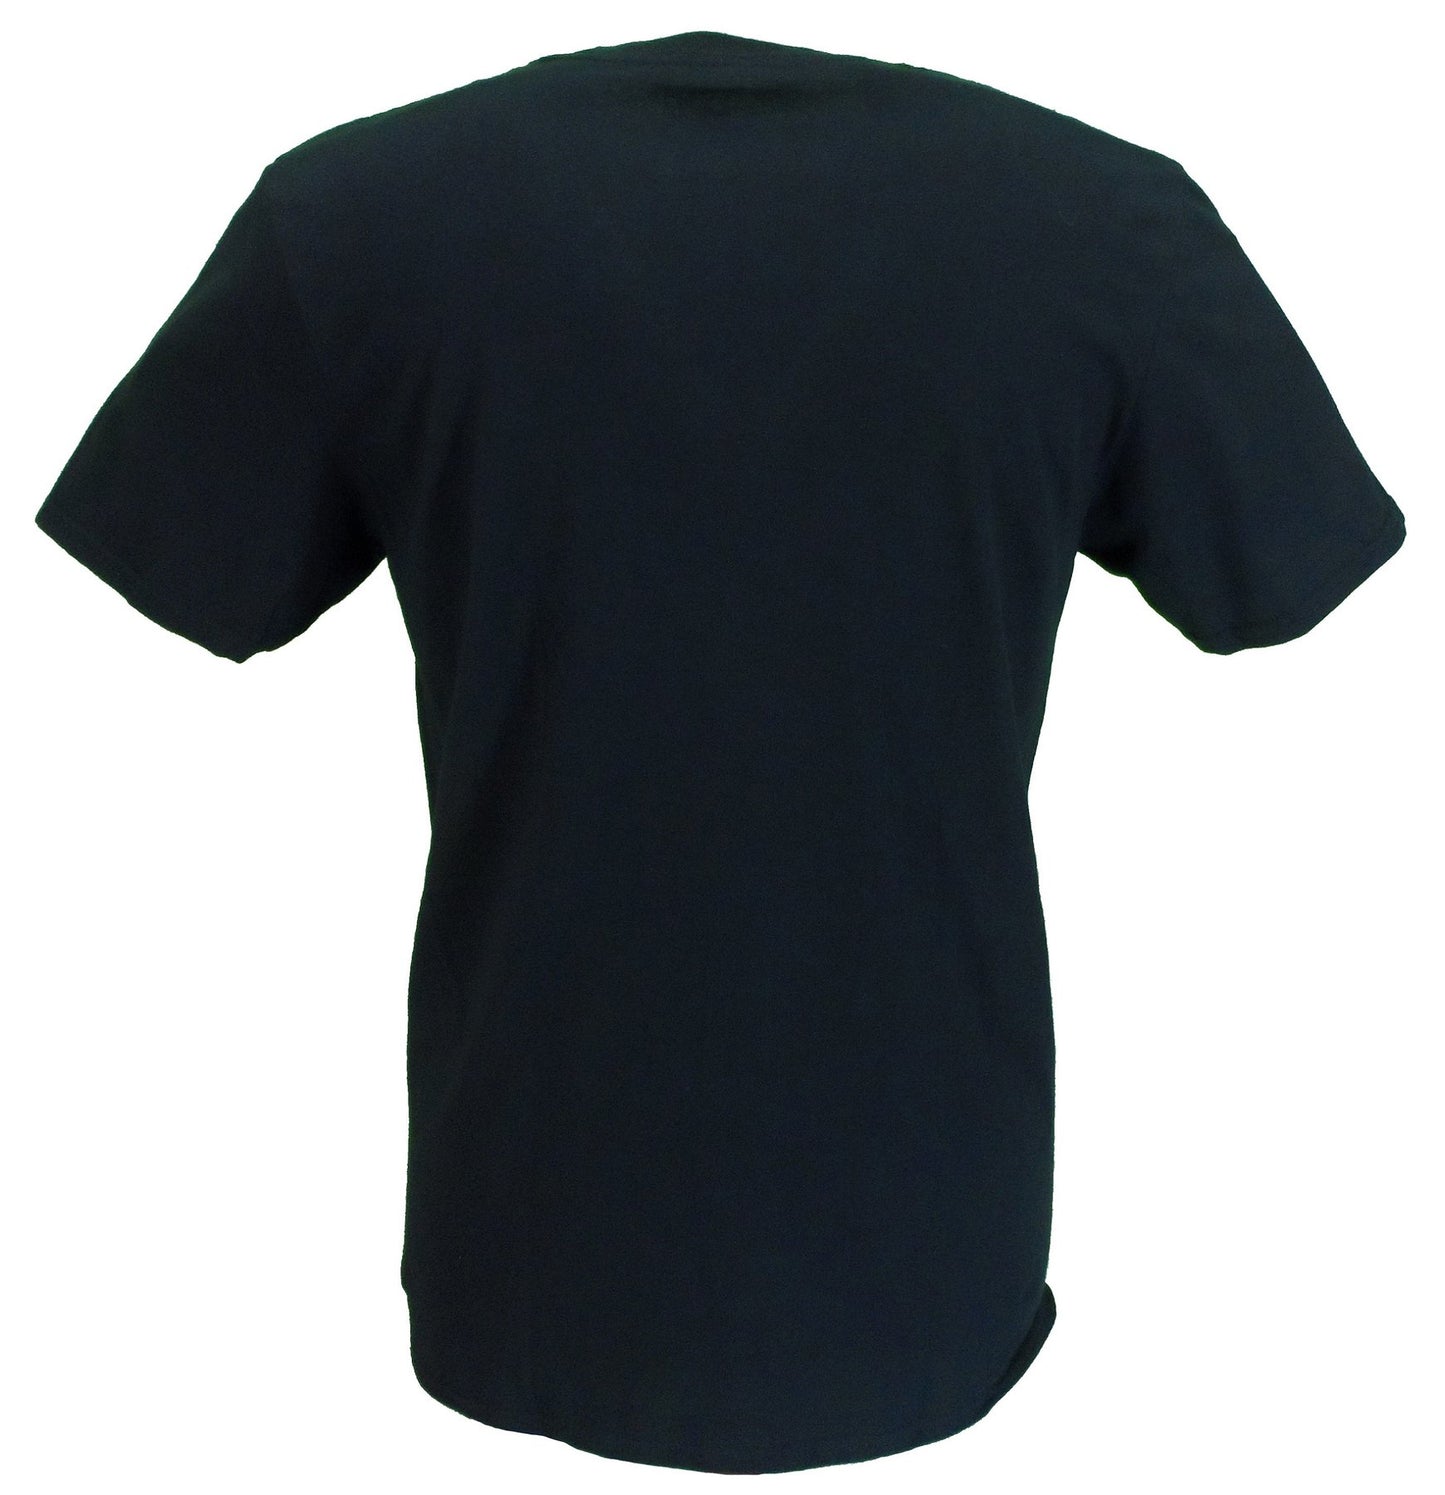 Schwarzes offizielles Herren-T-Shirt mit kleinem Gesichter-Logo